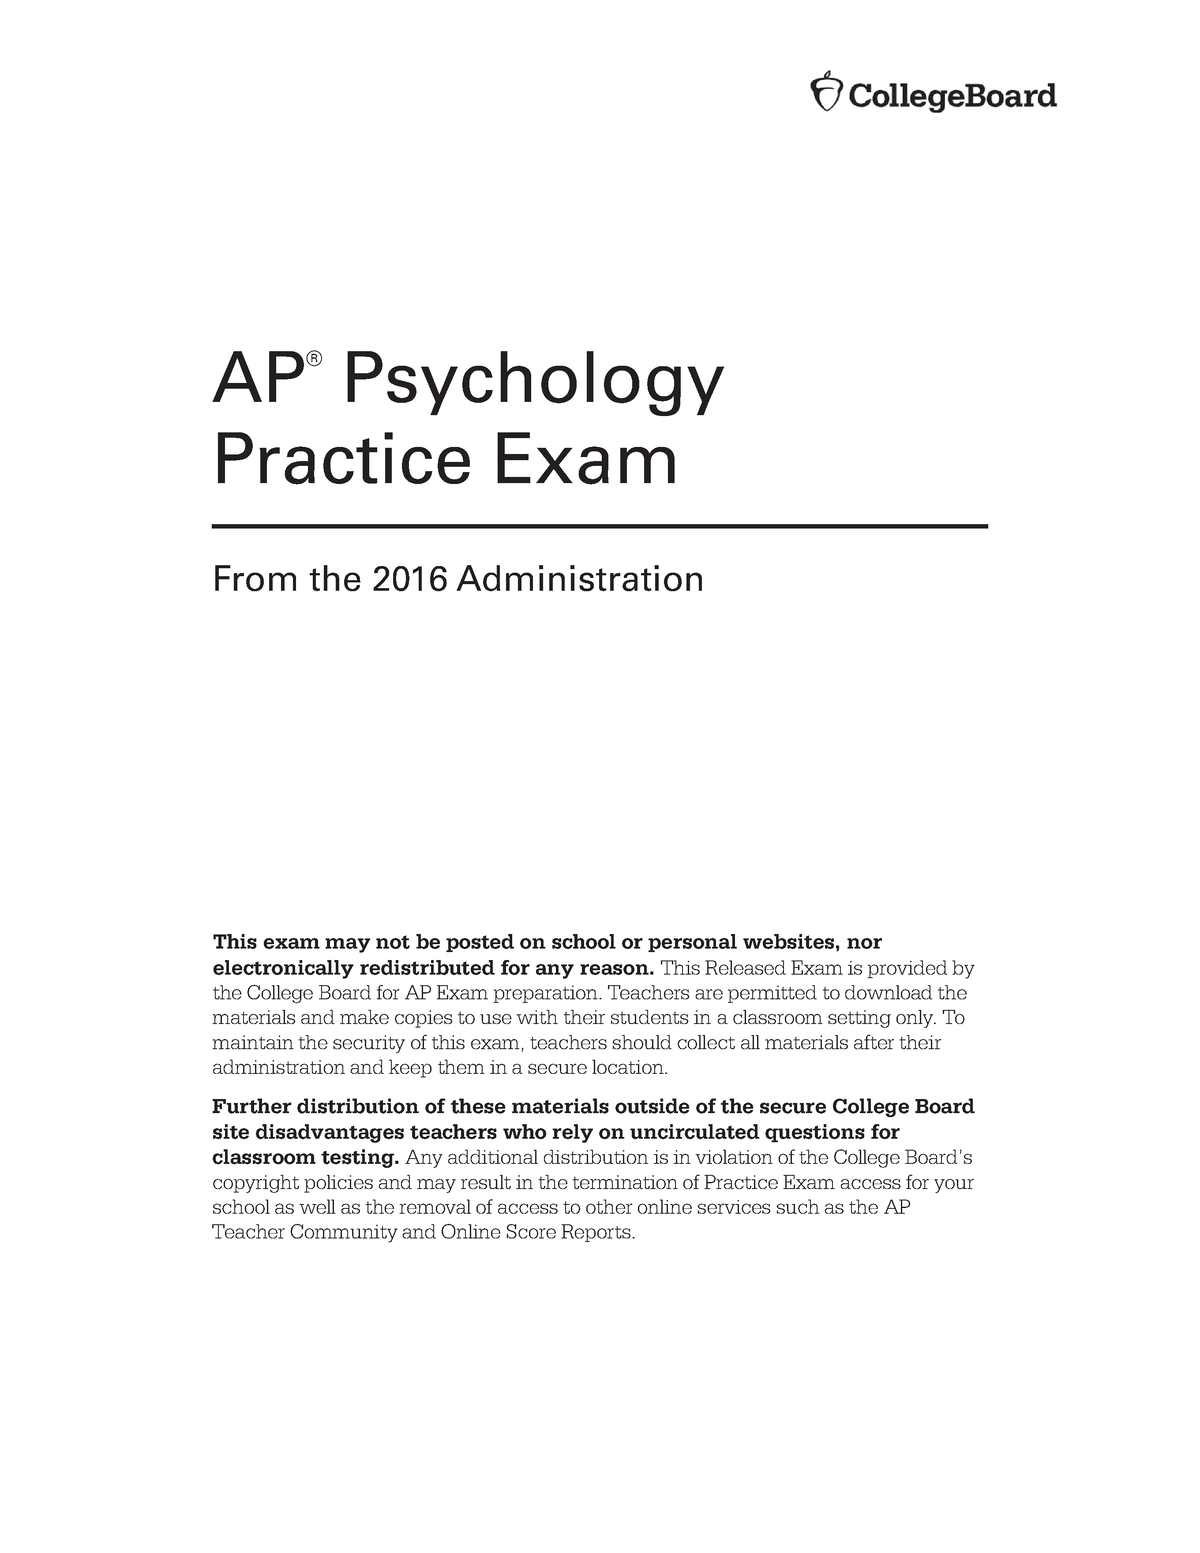 ap psychology exam essay